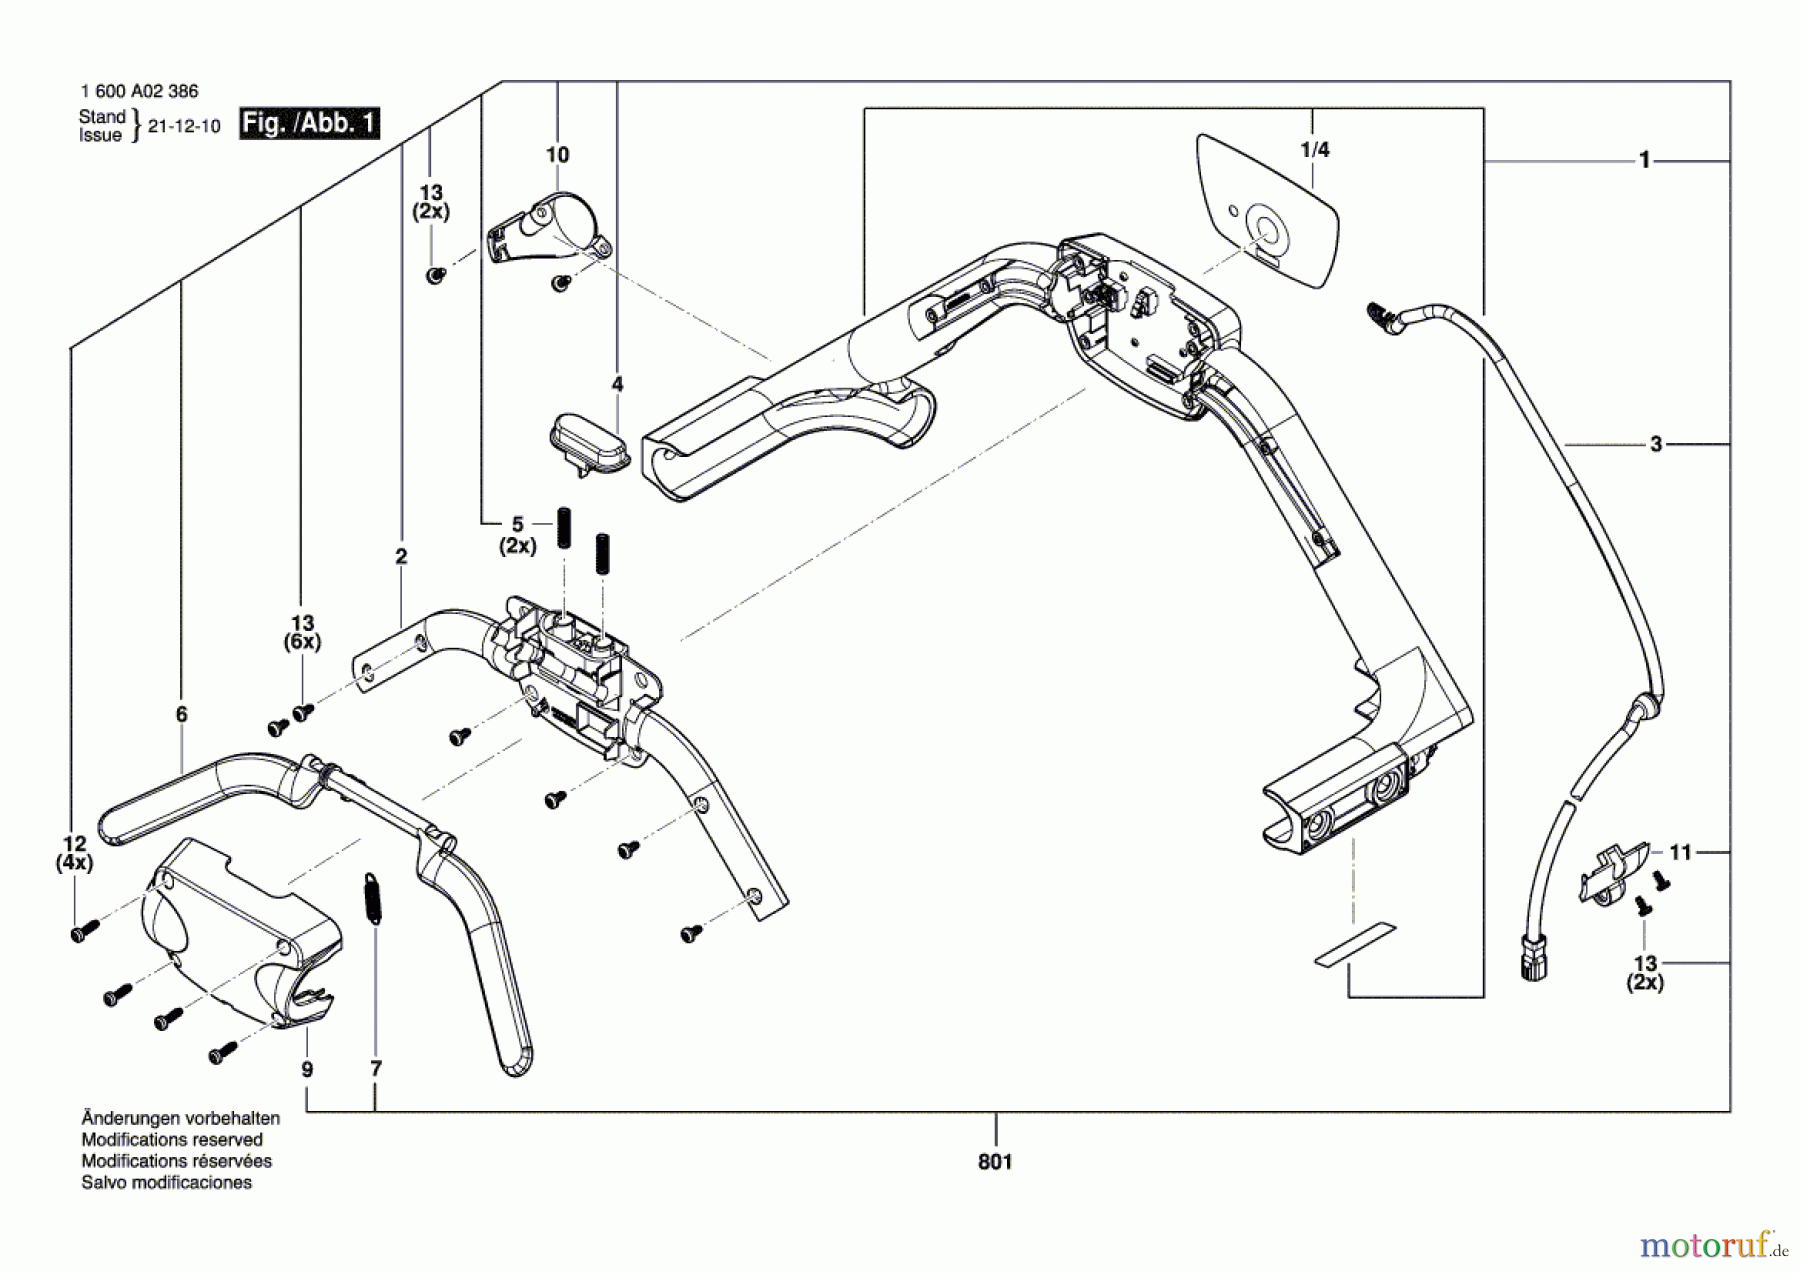  Bosch Werkzeug Schaltergruppe DGAAC-H Seite 1